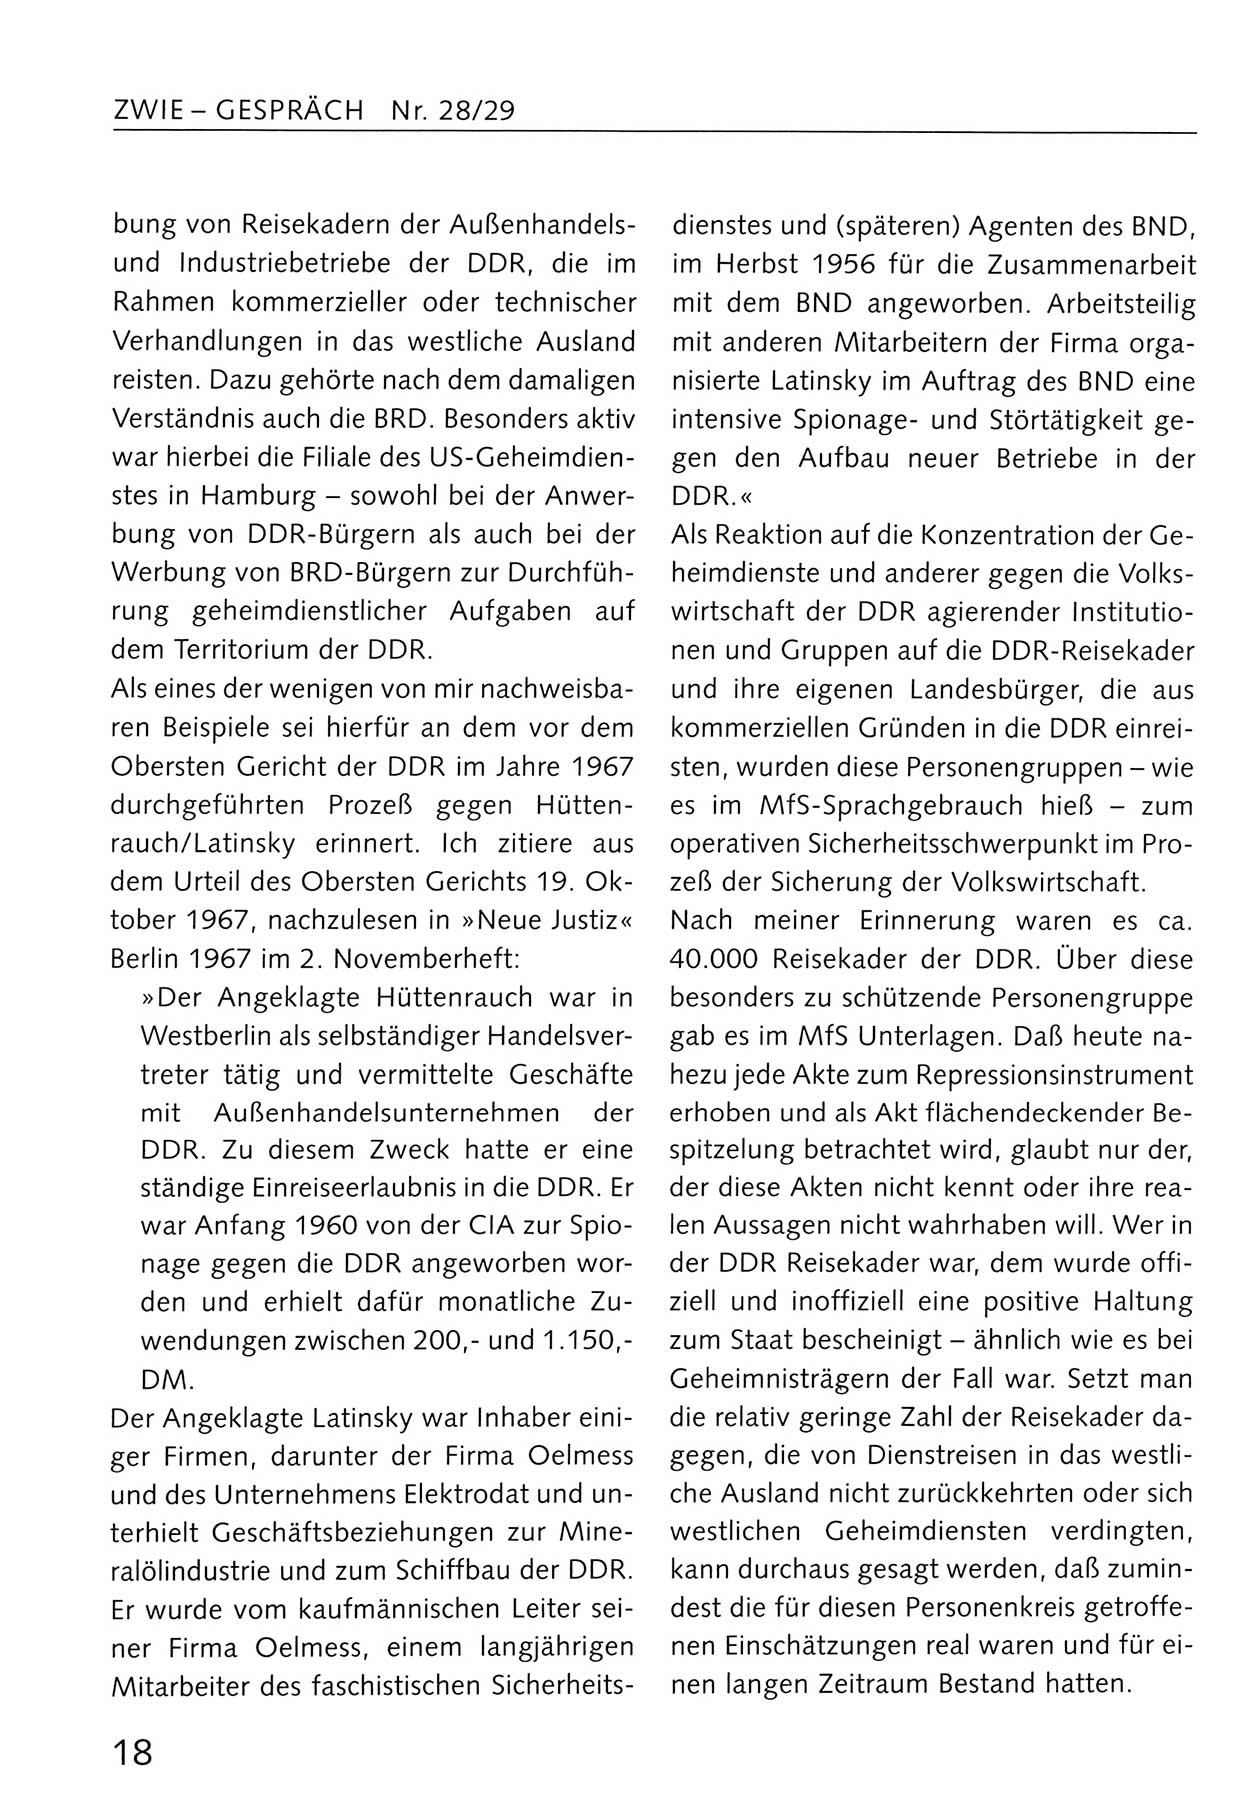 Zwie-Gespräch, Beiträge zum Umgang mit der Staatssicherheits-Vergangenheit [Deutsche Demokratische Republik (DDR)], Ausgabe Nr. 28/29, Berlin 1995, Seite 18 (Zwie-Gespr. Ausg. 28/29 1995, S. 18)